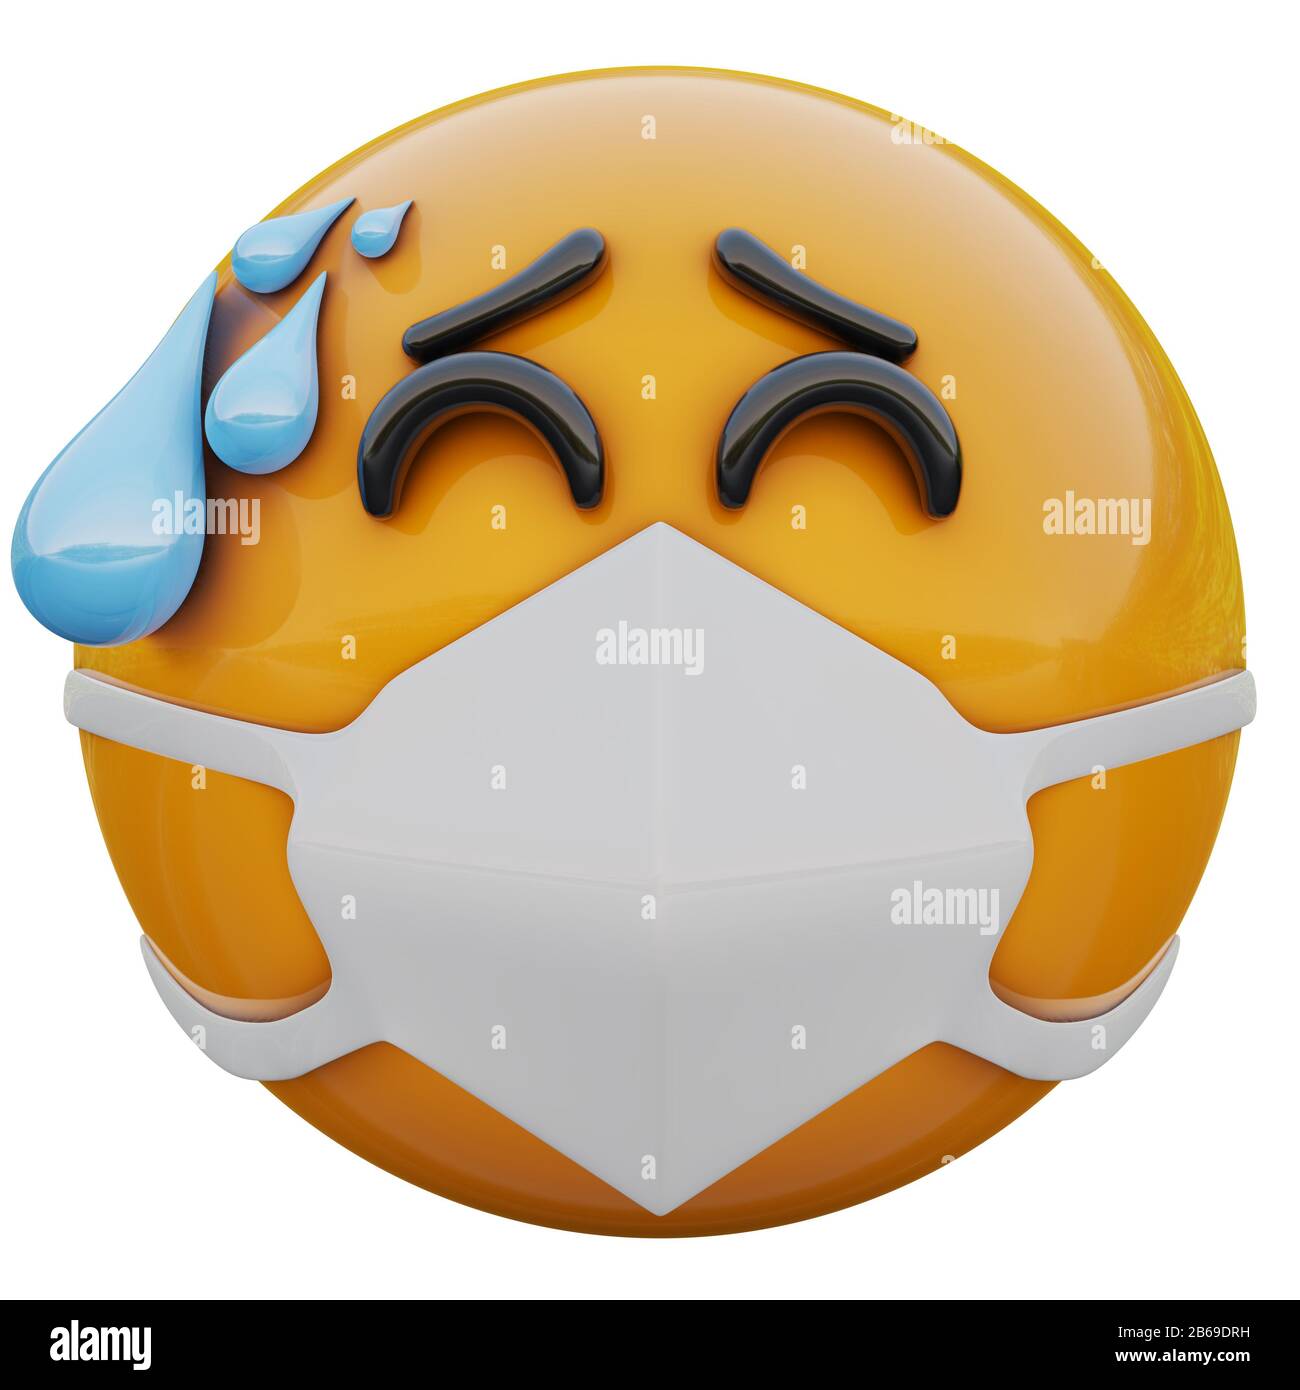 Rendu tridimensionnel du visage emoji souligné dans le masque médical protégeant du coronavirus 2019-nCoV, du MERS-nCoV, du sras, de la grippe aviaire et d'autres virus, des germes Banque D'Images